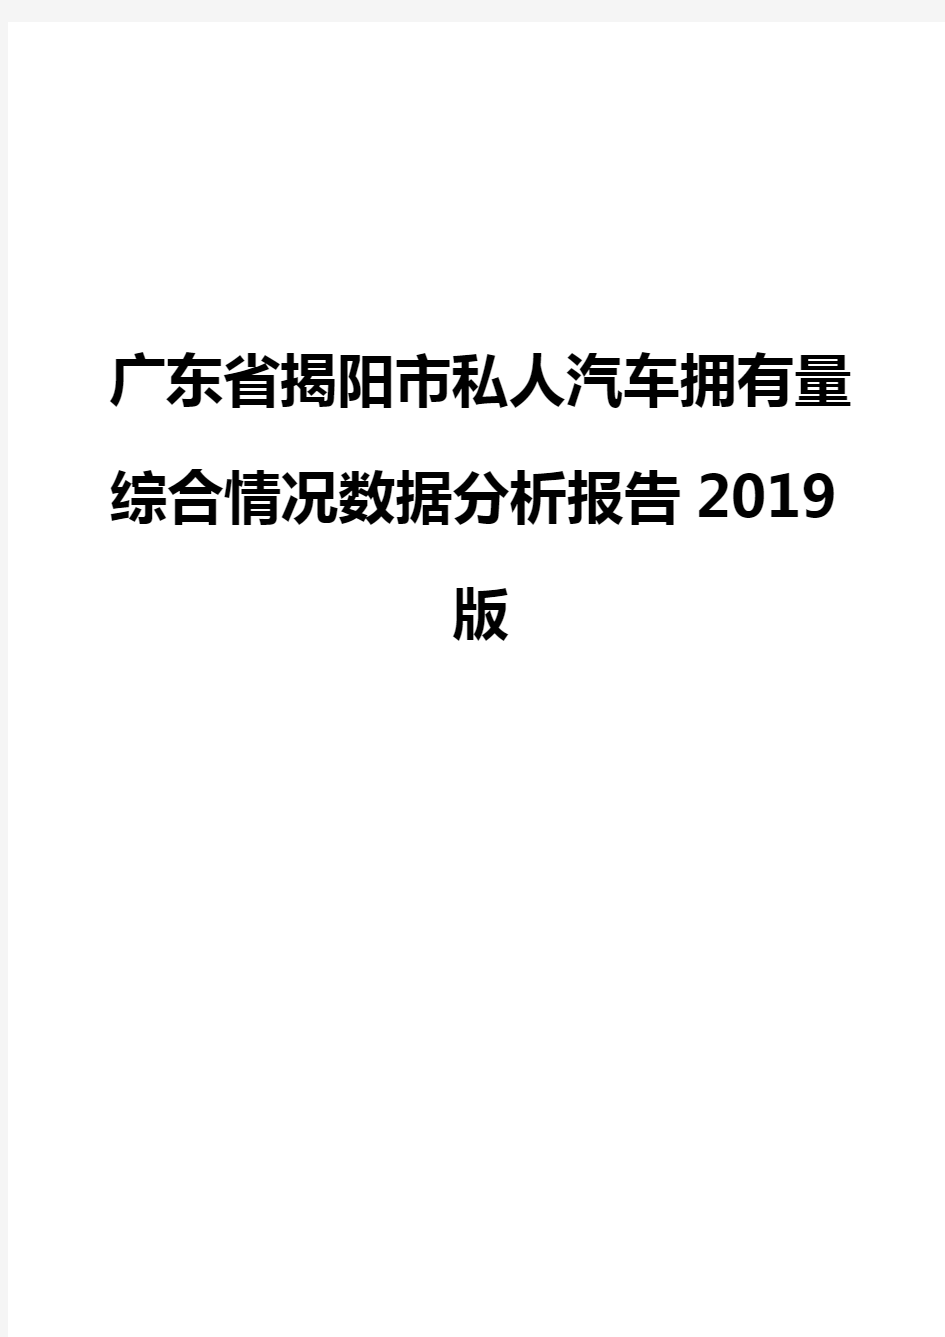 广东省揭阳市私人汽车拥有量综合情况数据分析报告2019版